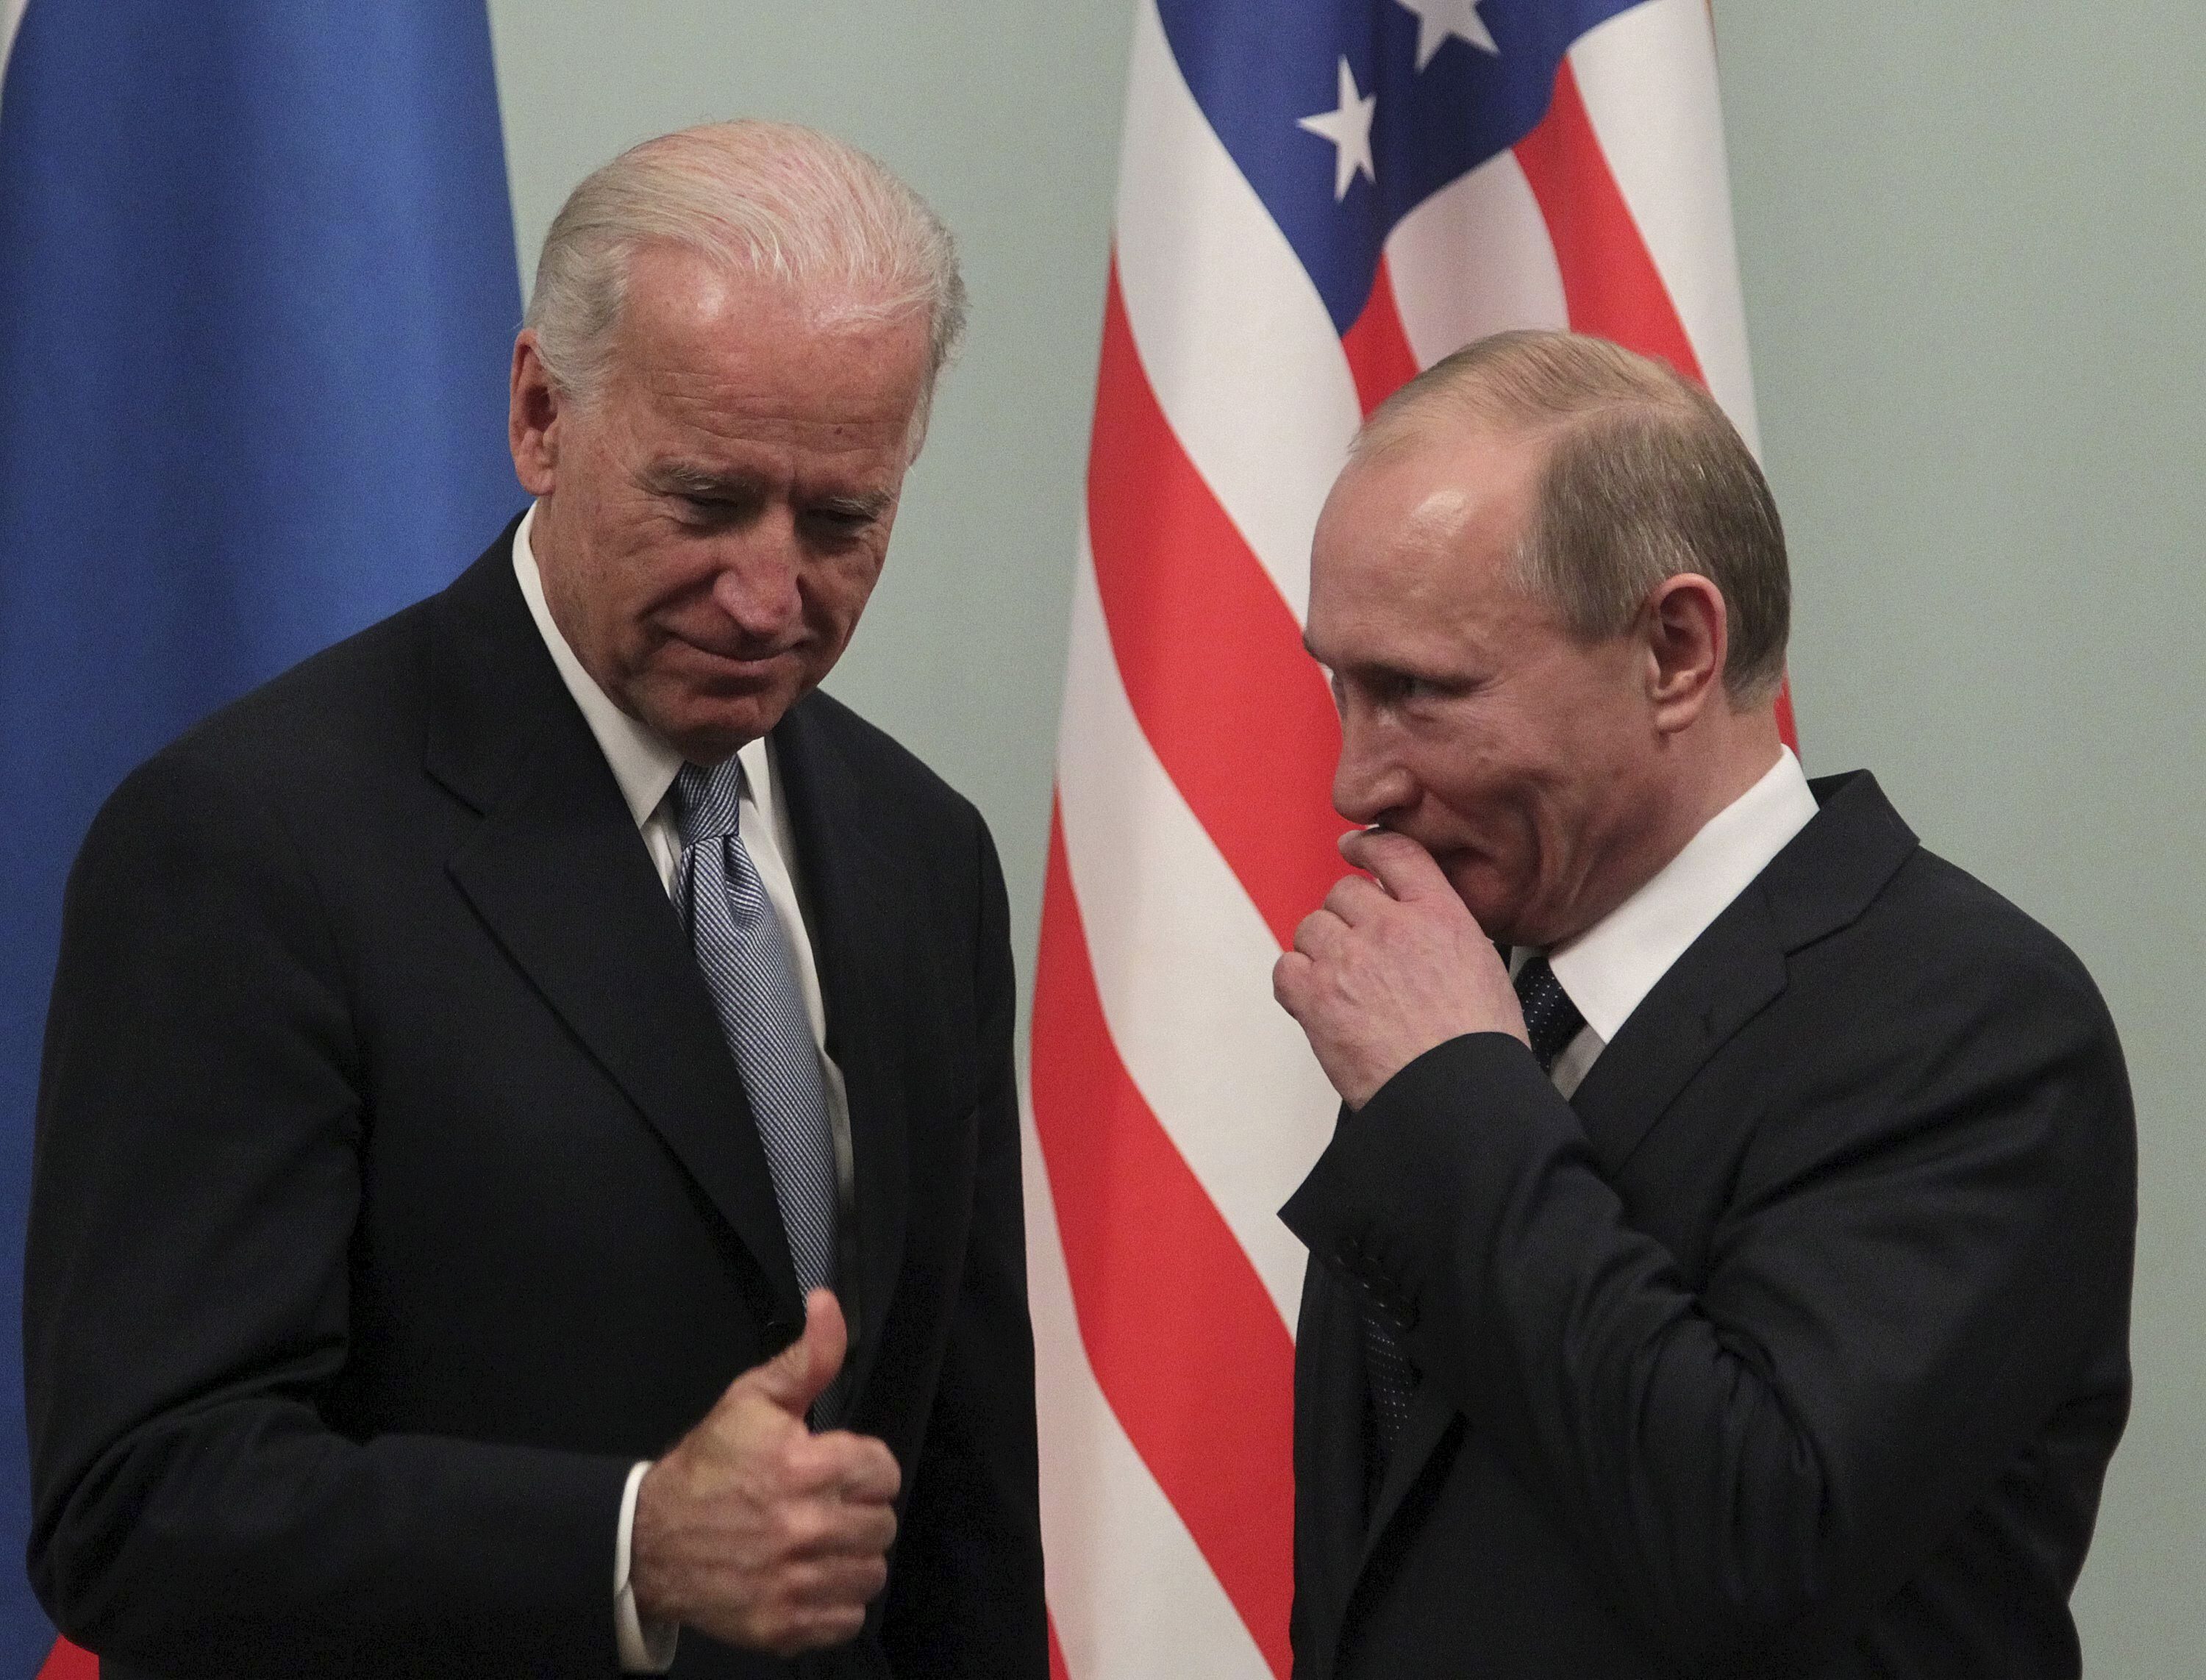 El entonces vicepresidente estadounidense, Joe Biden (i), y el, entonces, primer ministro ruso, Vladimir Putin, durante un encuentro en Moscú en 2011.EFE/MAXIM SHIPENKOV/Archivo
